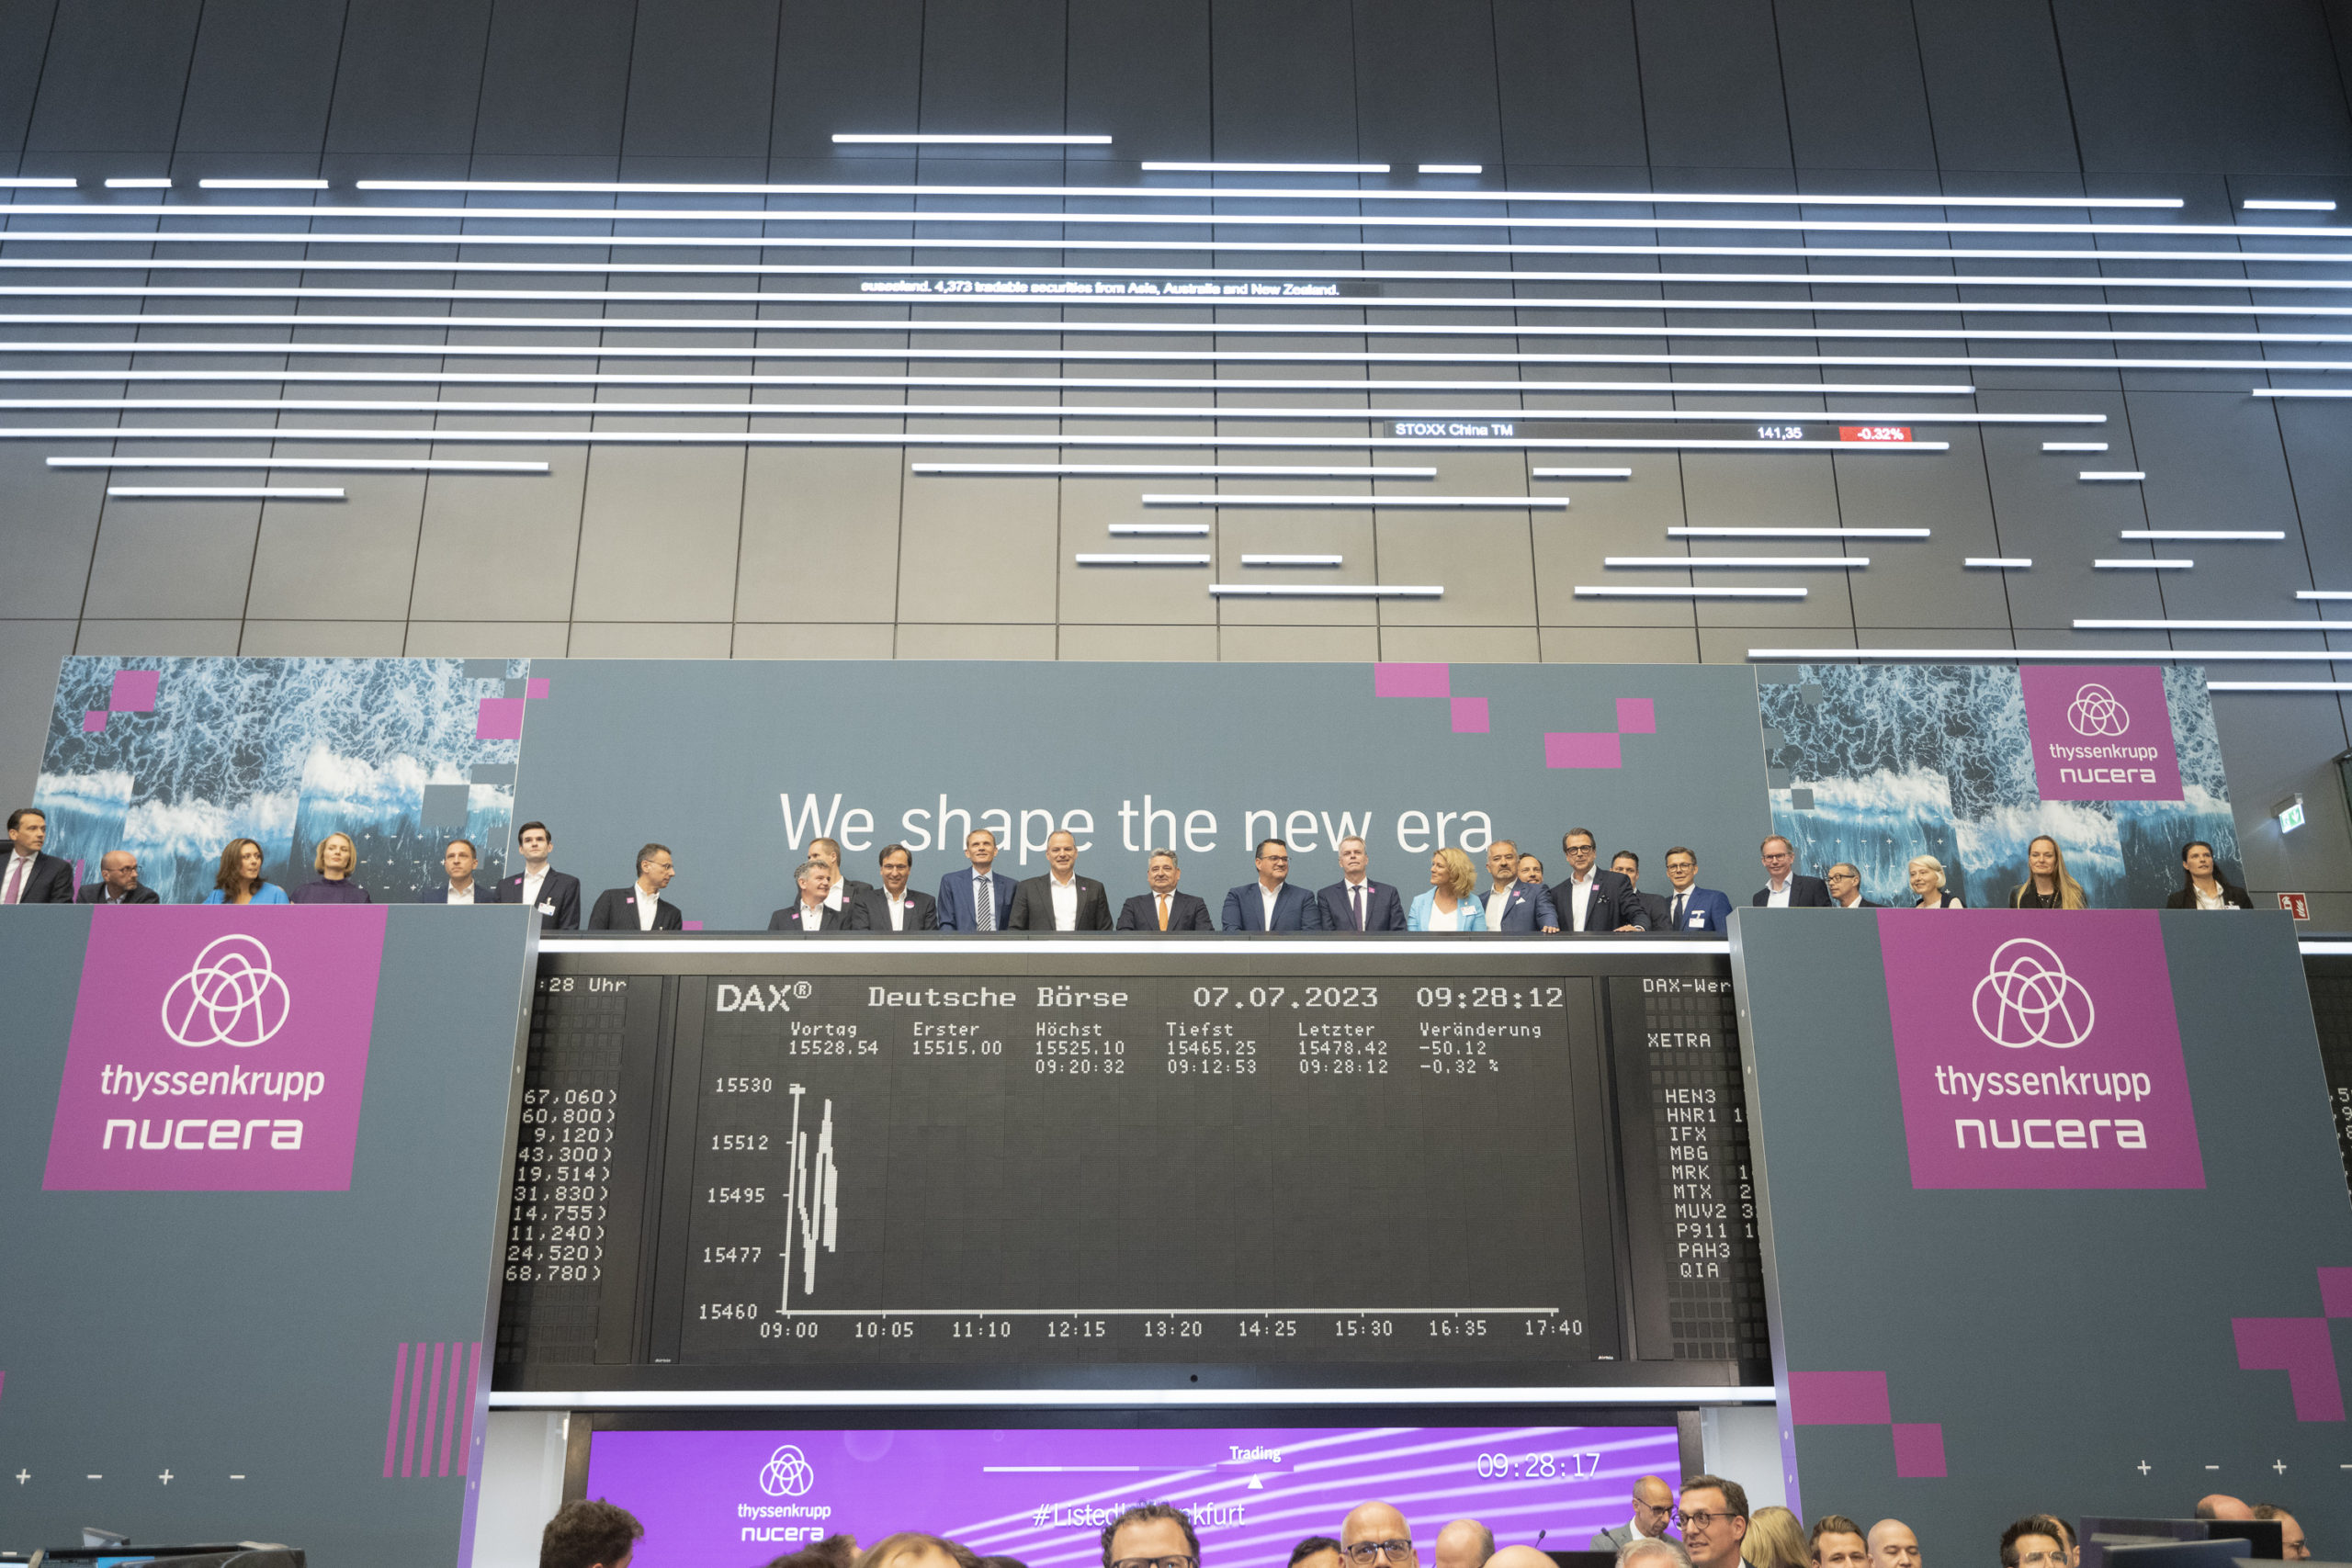 Executivos de terno e gravata, atrás de um balcão, comemoram IPO da thyssenkrupp nucera na bolsa de Frankfurt (Foto: Divulgação)